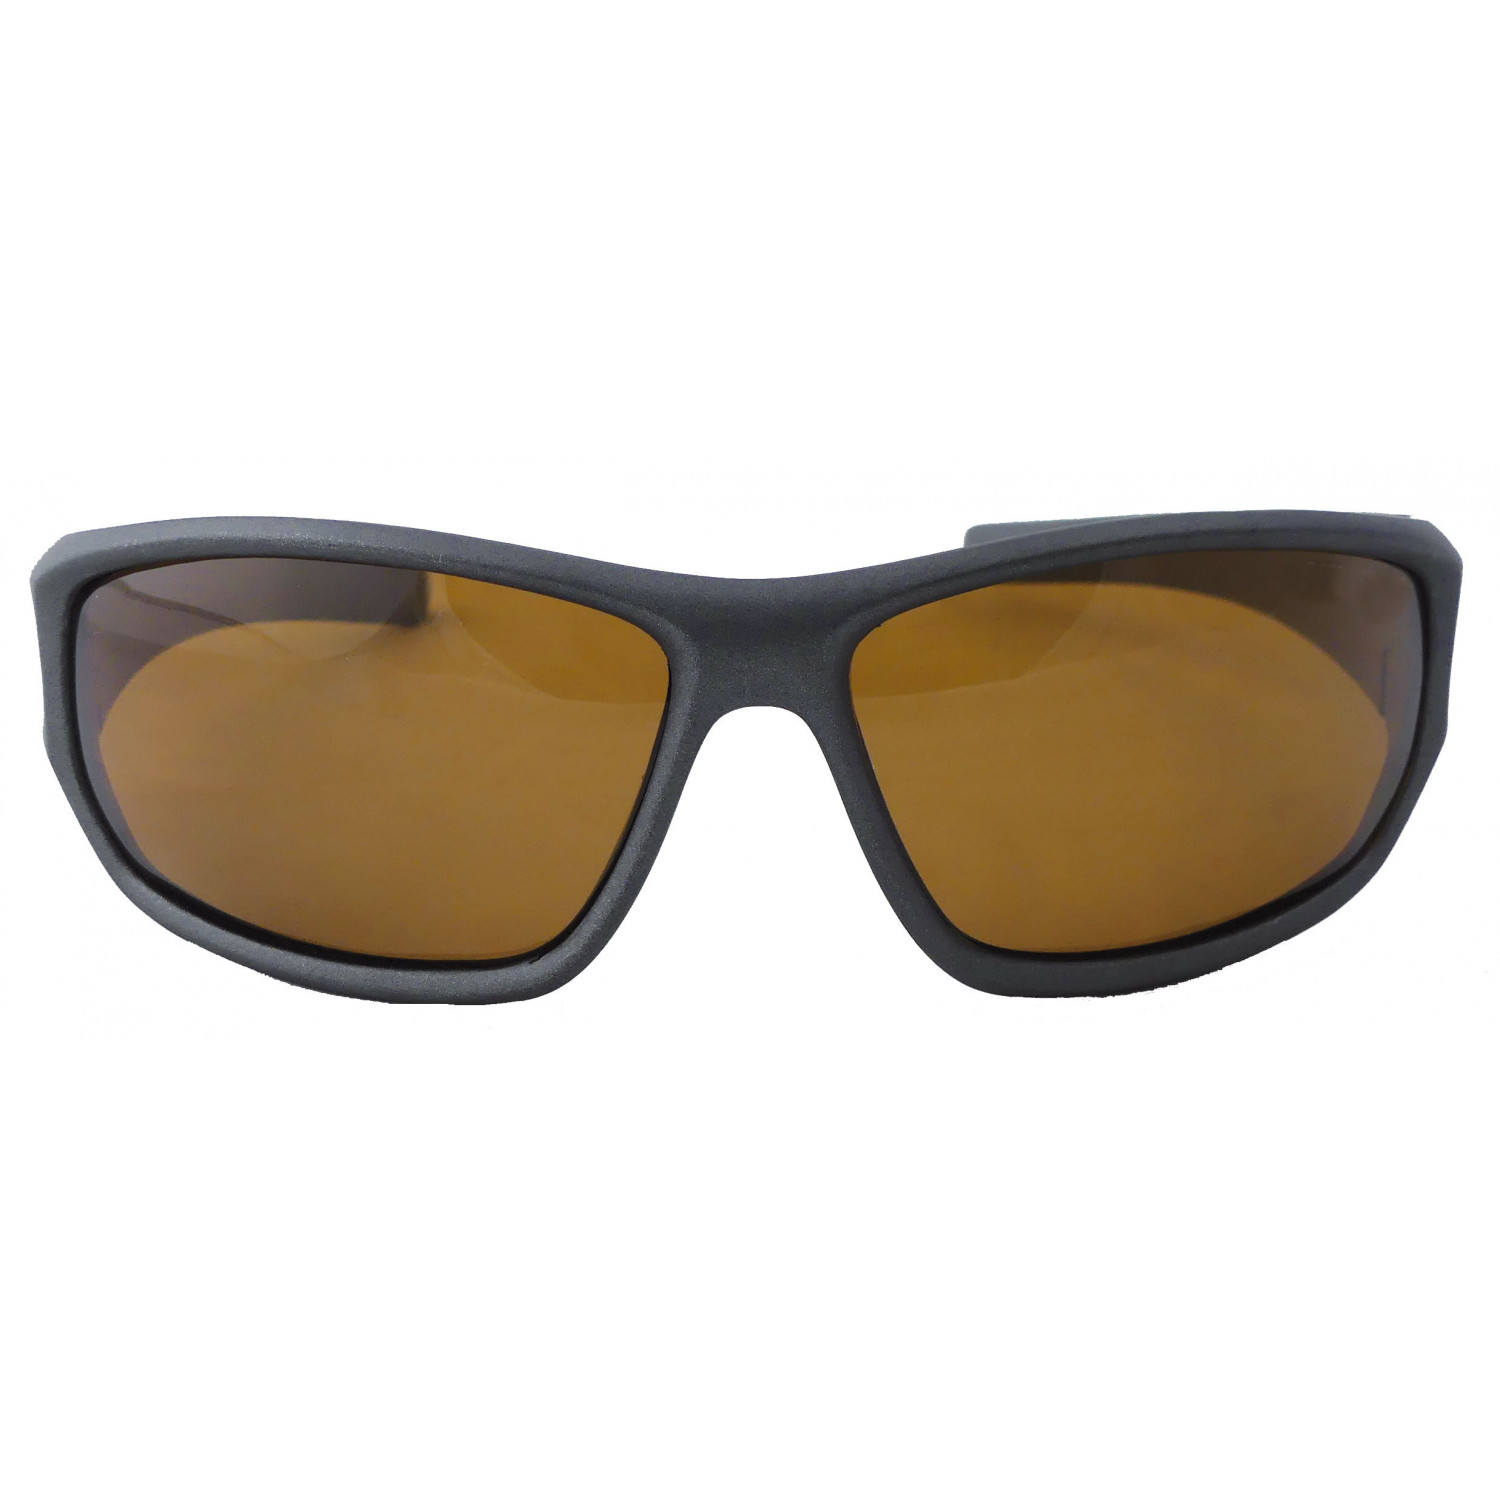 Suxxes Polarisationsbrille schwarz mit braunen Gläsern